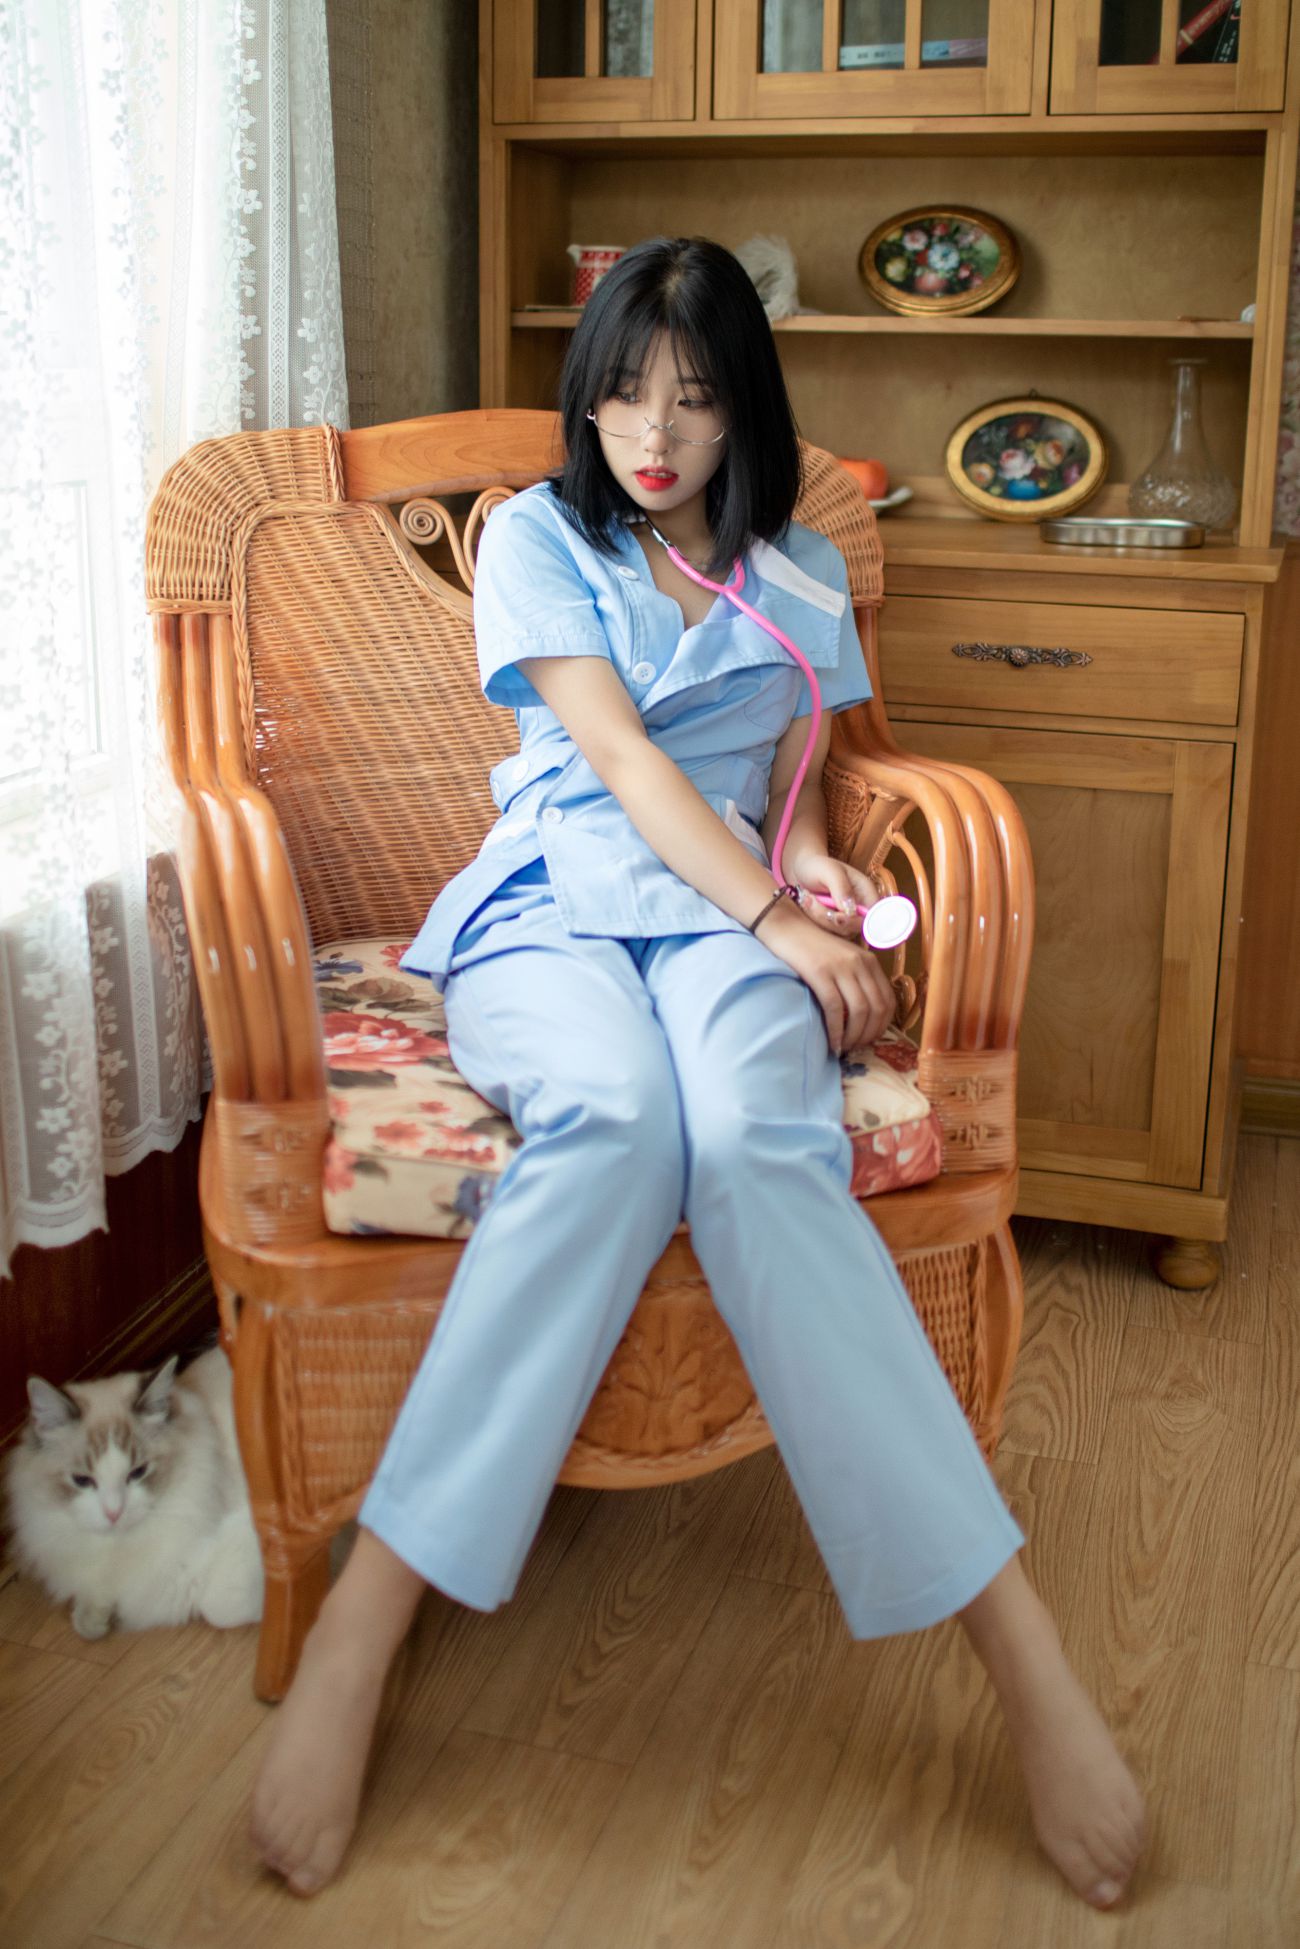 微博美少女会拍照的咔咔性感Cosplay写真护士装 白色连衣裙 (3)